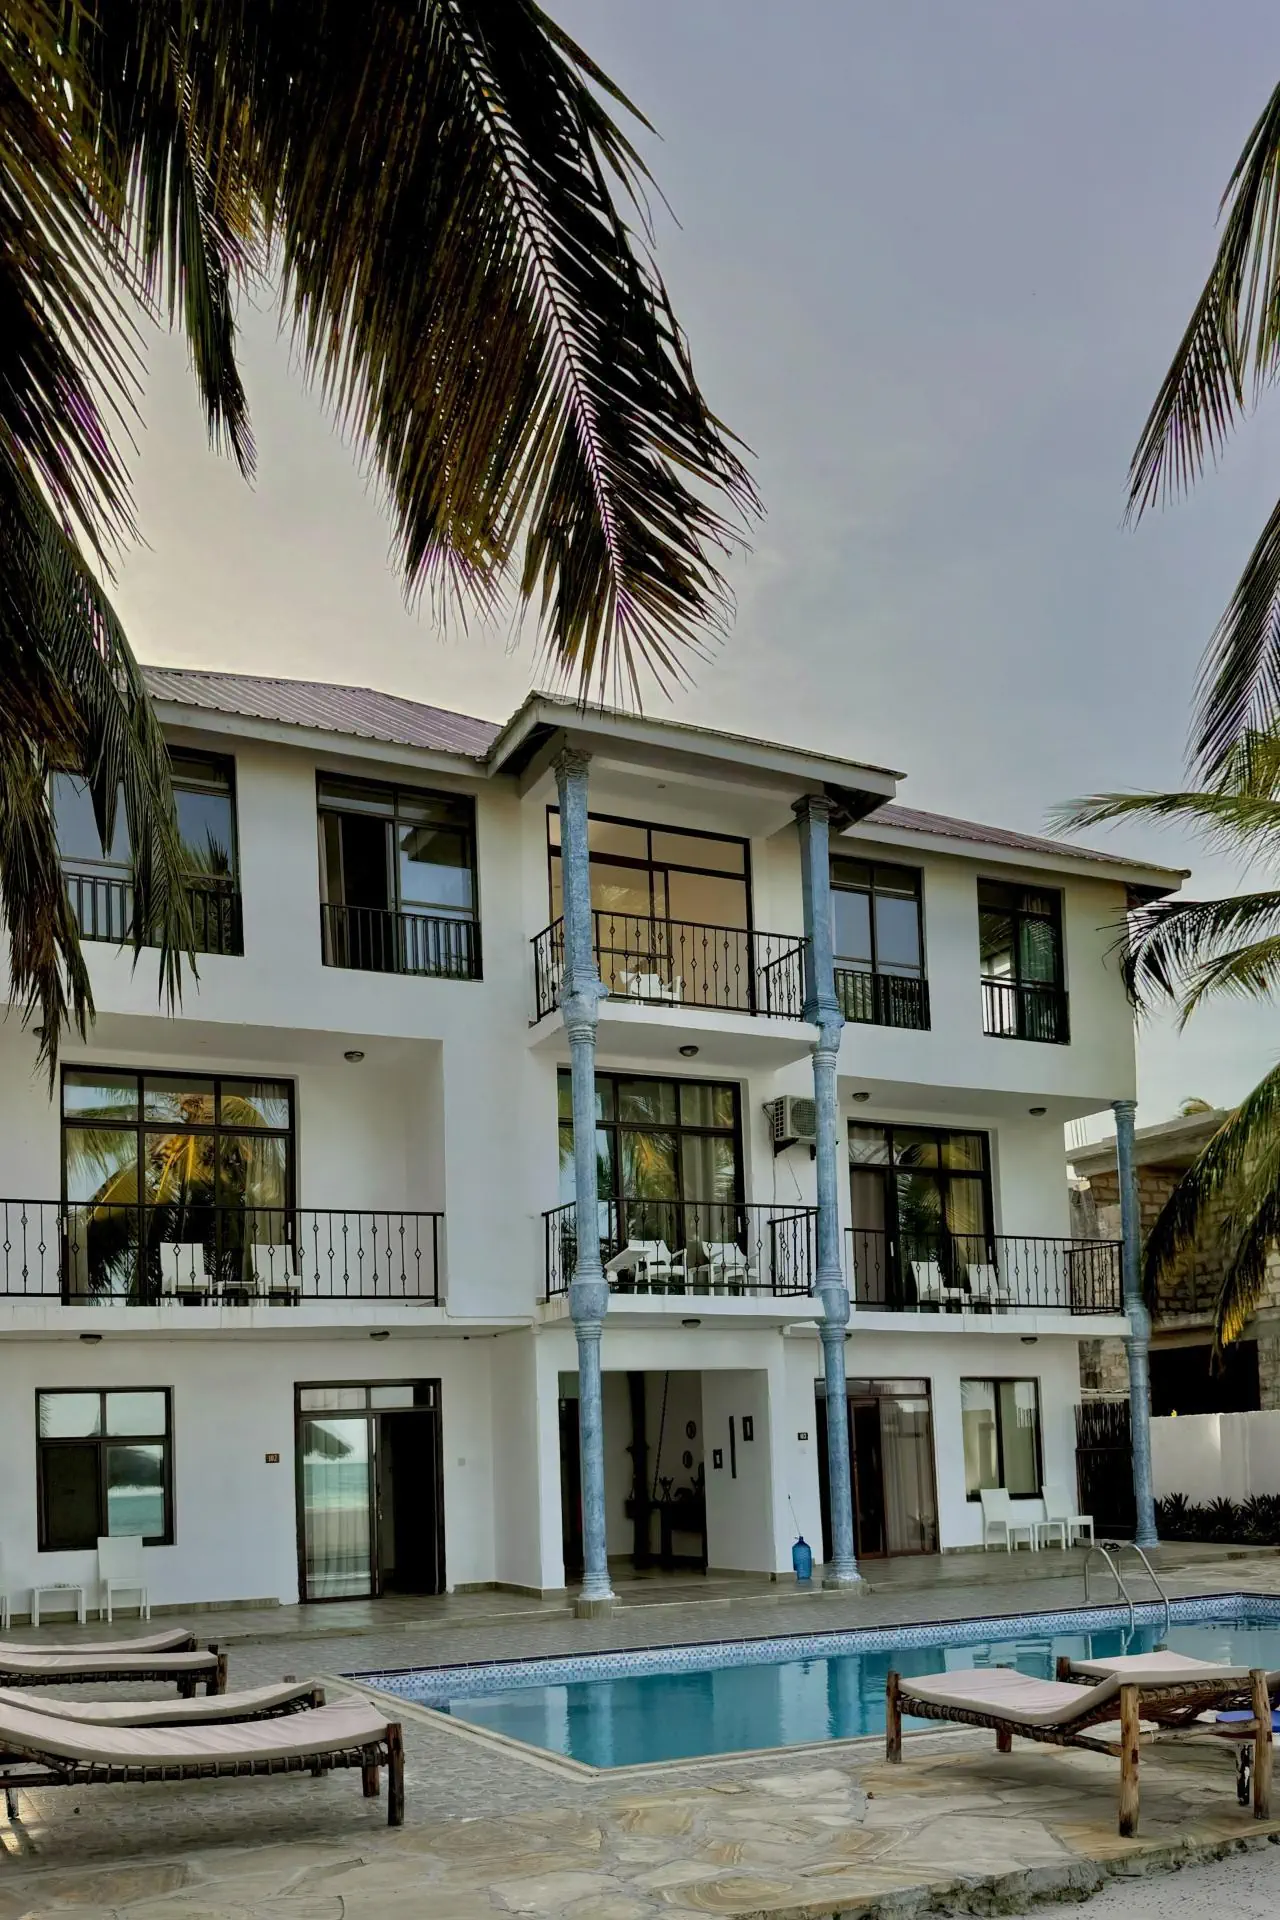 Tanzania Zanzibar Pwani Mchangani BIANCO AZZURRO HOTEL AND RESTAURANT